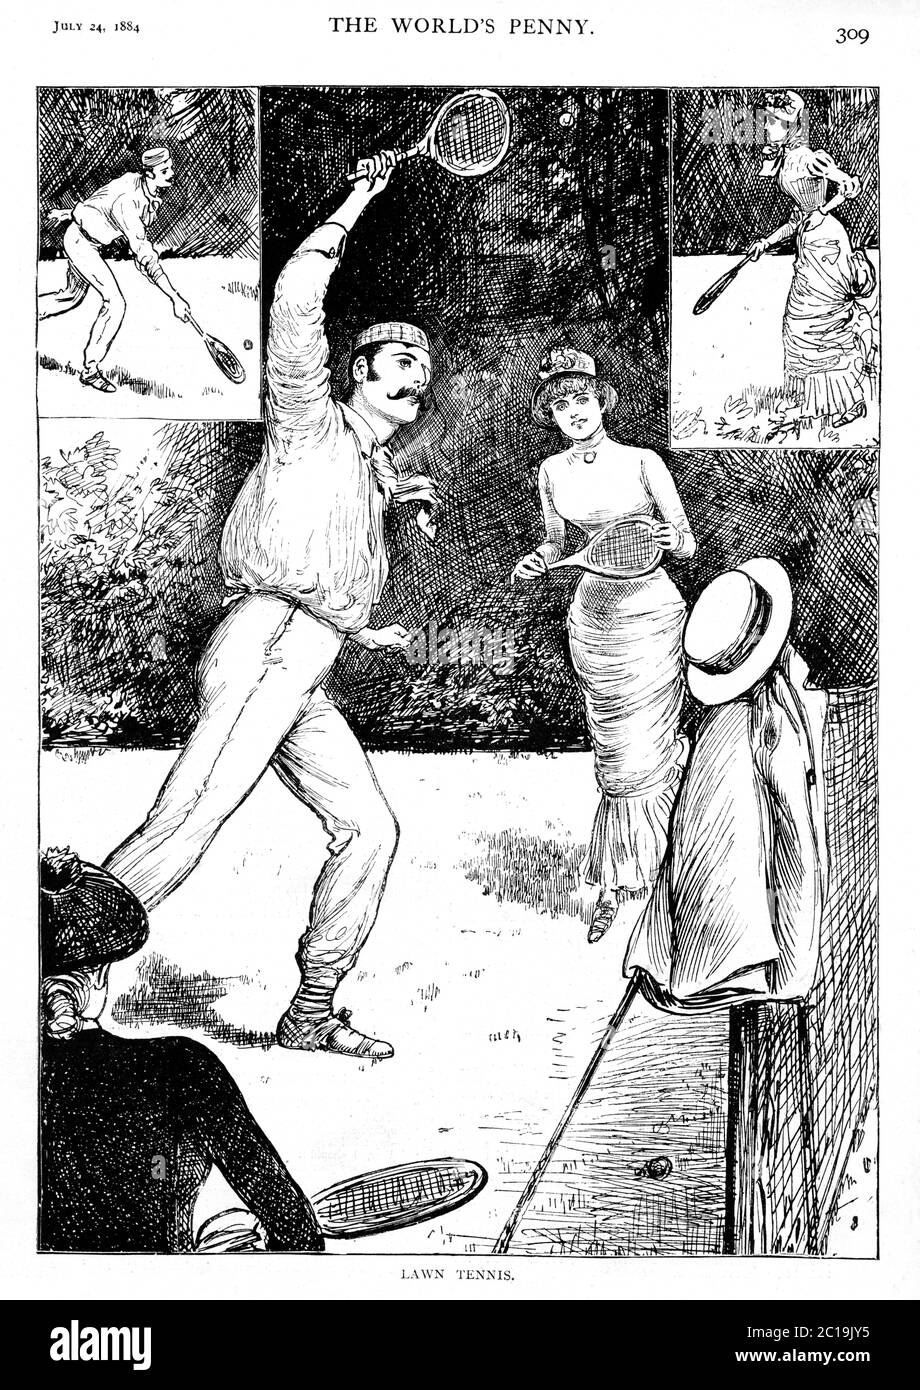 Lawn Tennis, 1884 magazine ilustración del nuevo deporte jugado socialmente por hombres y mujeres en el césped bien cuidado de Inglaterra Foto de stock